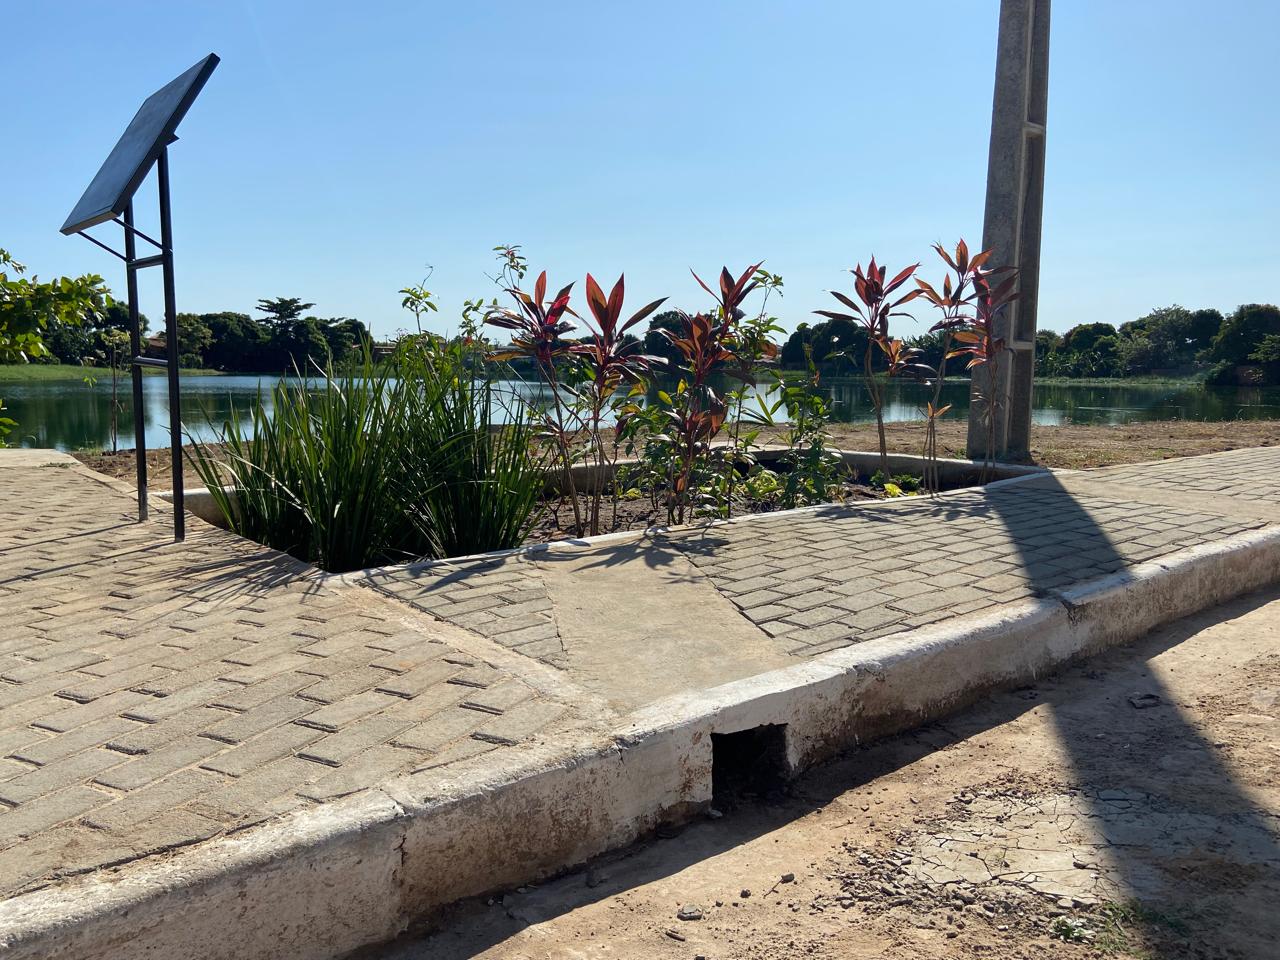 Viver+Teresina finaliza construção do primeiro jardim de chuva do Piauí; saiba como funciona